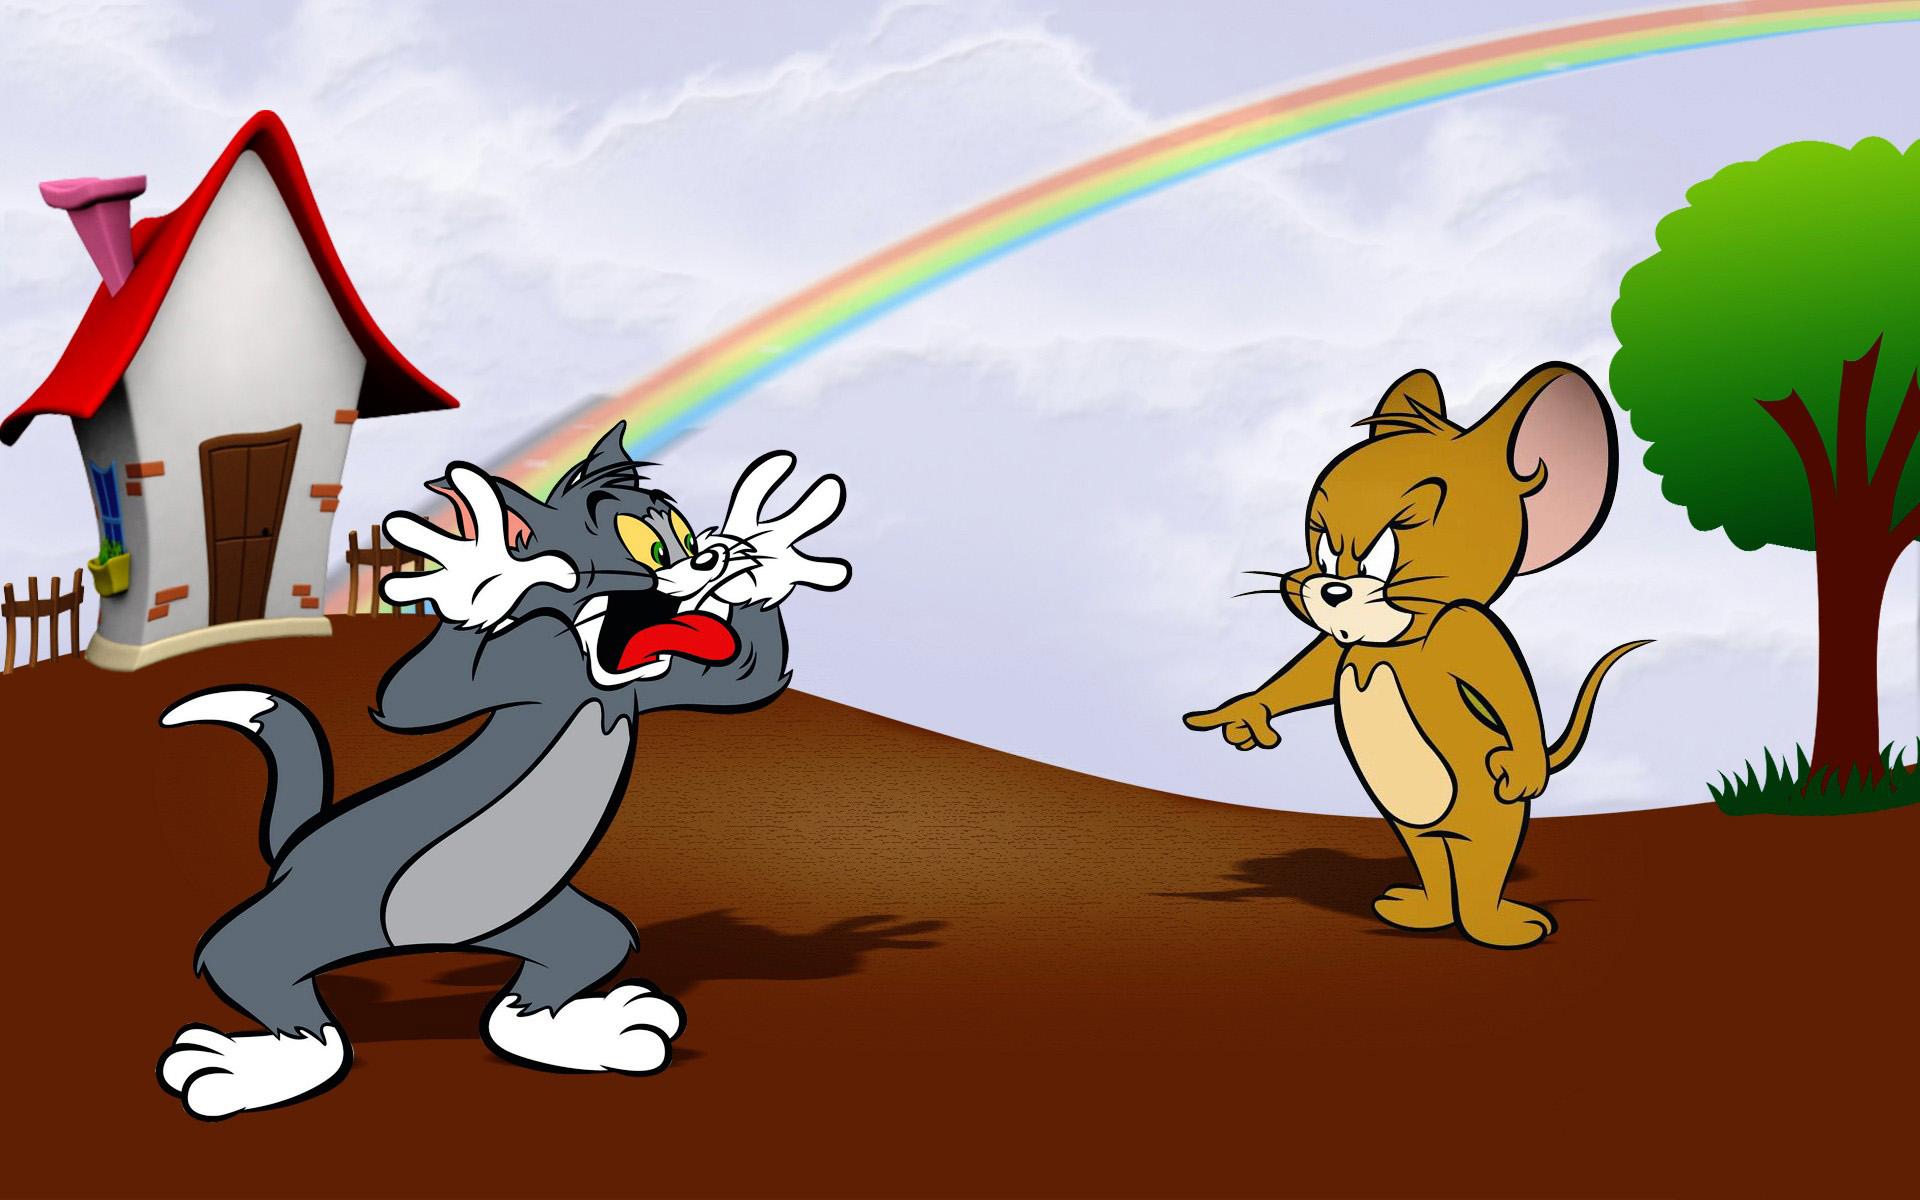 Jerry том и джерри. Tom and Jerry. Tom and Jerry cartoon. Tom and Jerry 3d.